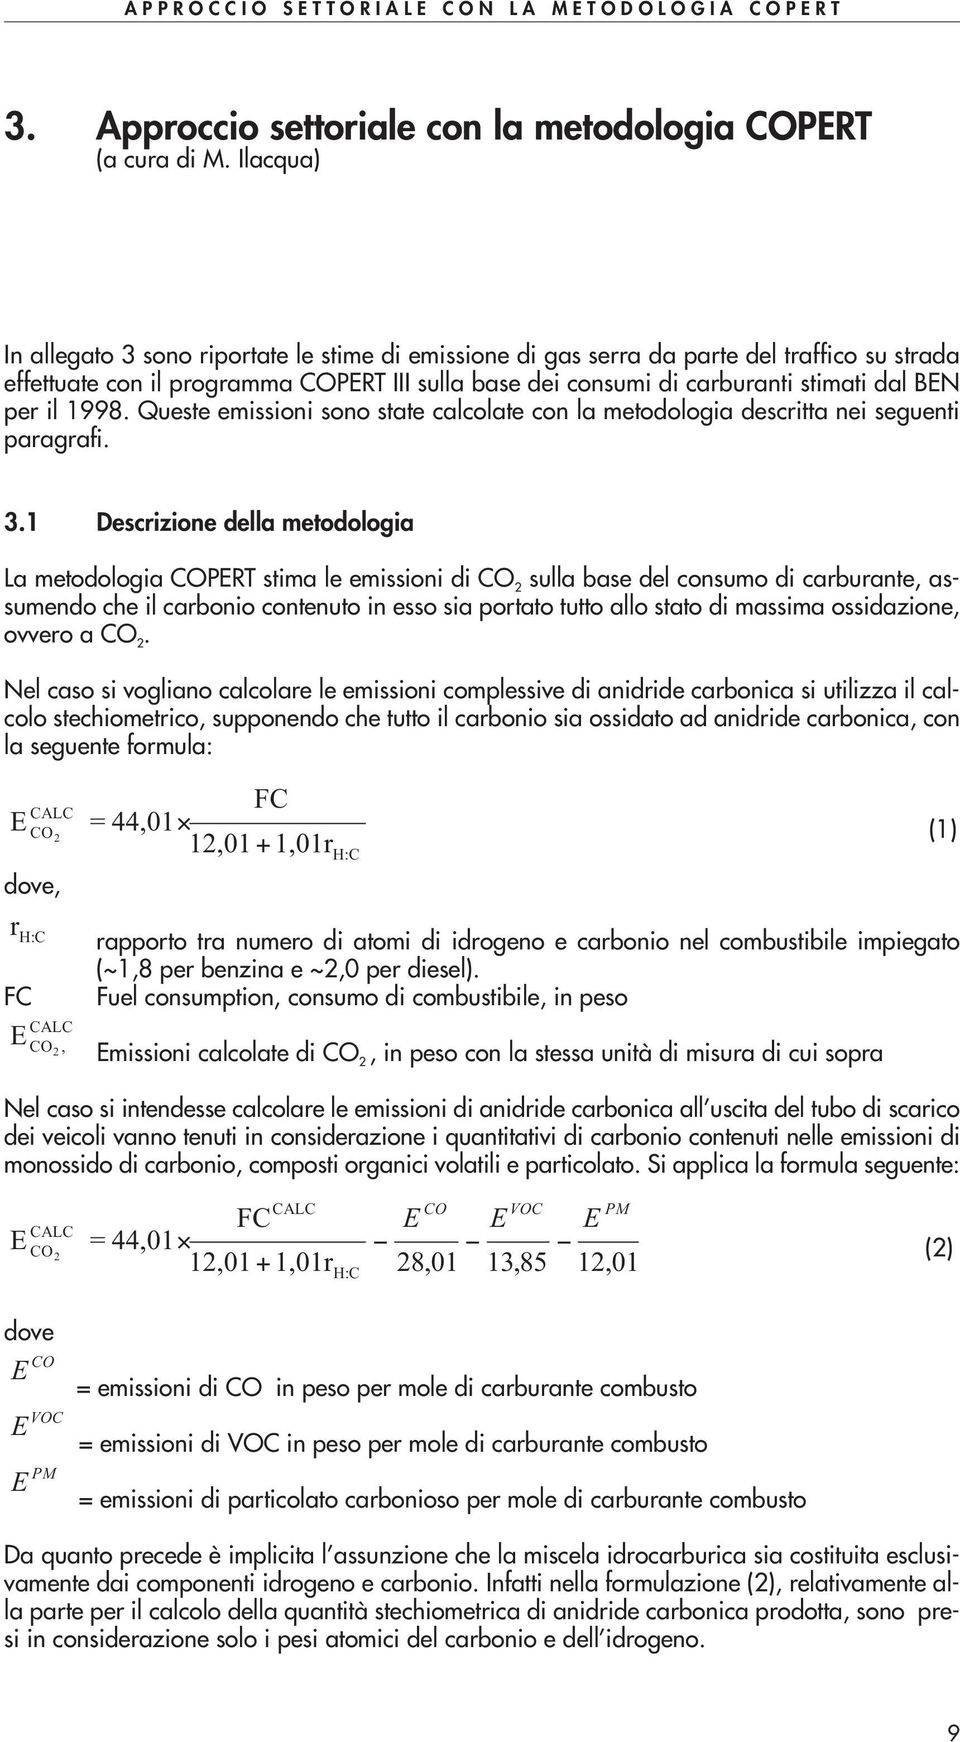 1998. Queste emissioi soo state calcolate co la metodologia descritta ei segueti paragrafi. 3.